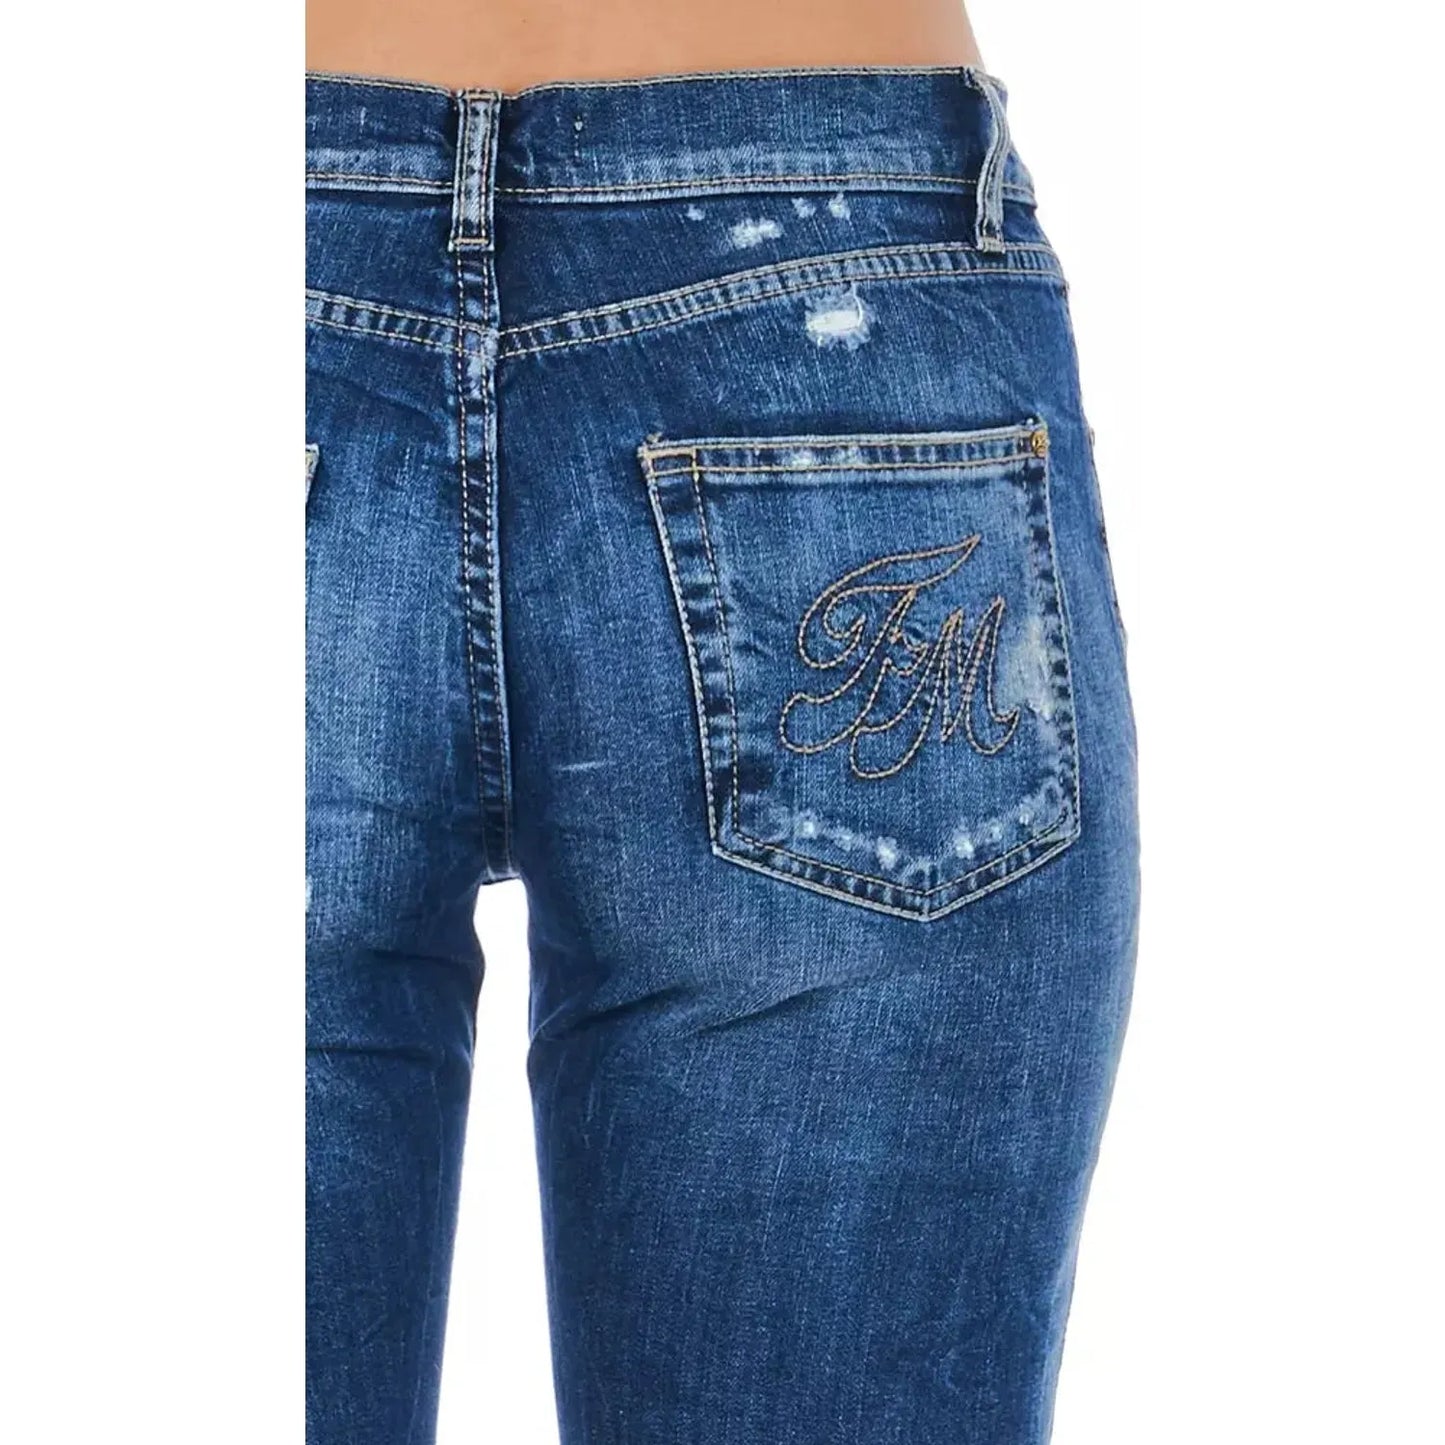 Frankie Morello Blue Cotton Blend Worn Wash Jeans blue-cotton-jeans-pant-51 stock_product_image_21765_591093464-22-1516400e-b7d.webp